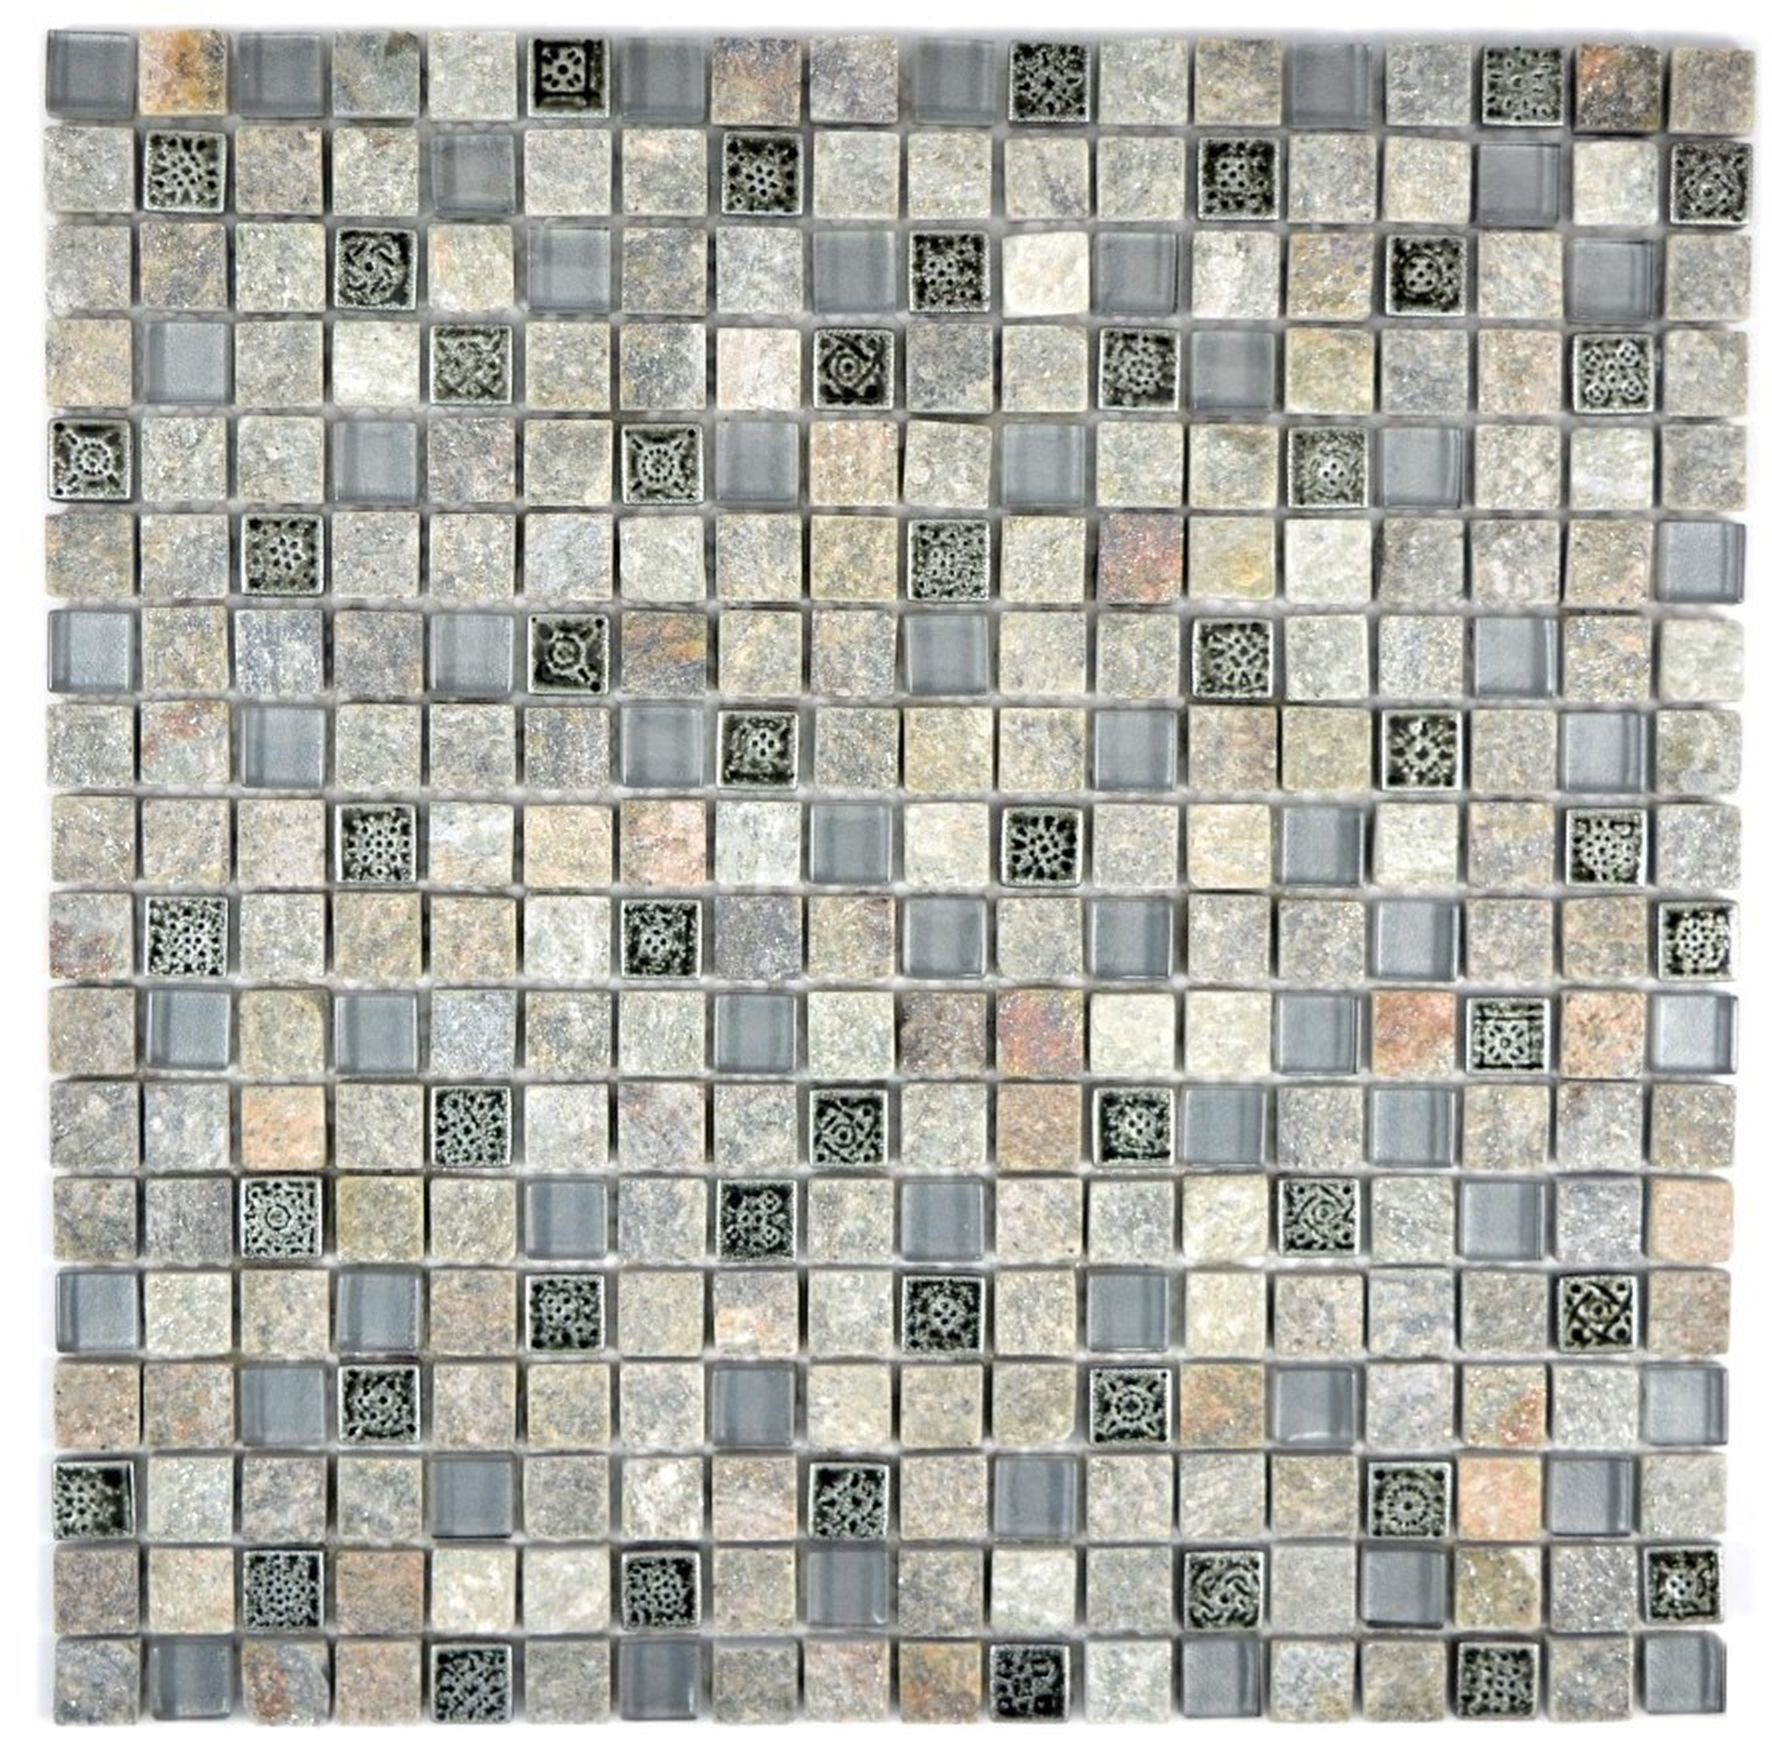 Mosani Mosaikfliesen Quadratisches Glasmosaik Resin matt grau Mosaikfliesen Naturstein